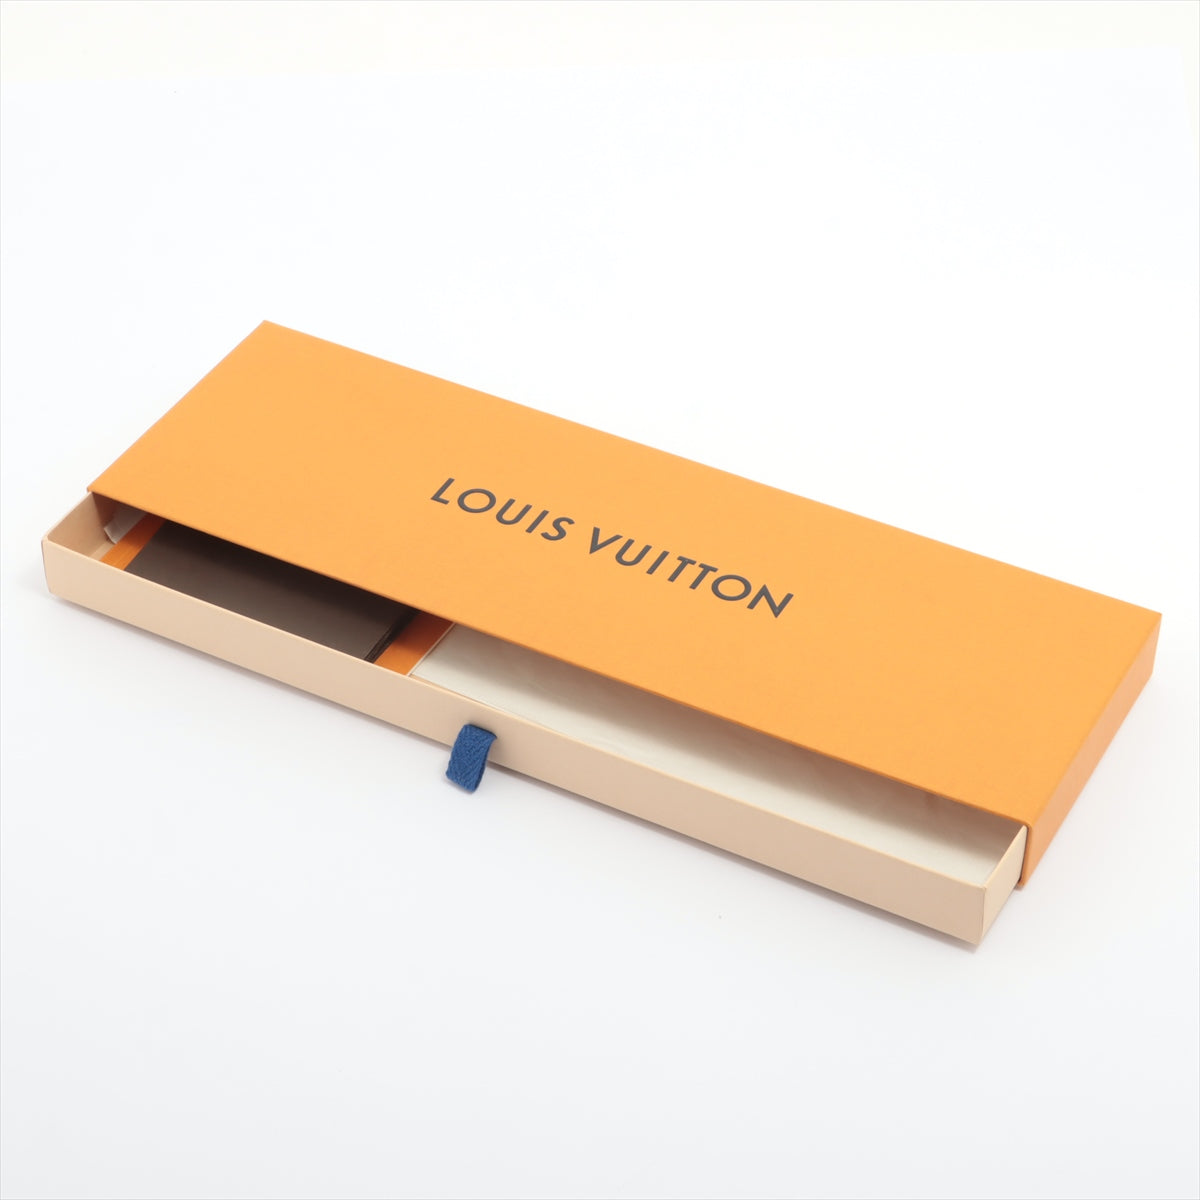 Shop Louis Vuitton Monogram classic tie (M70953, M70952) by sunnyfunny